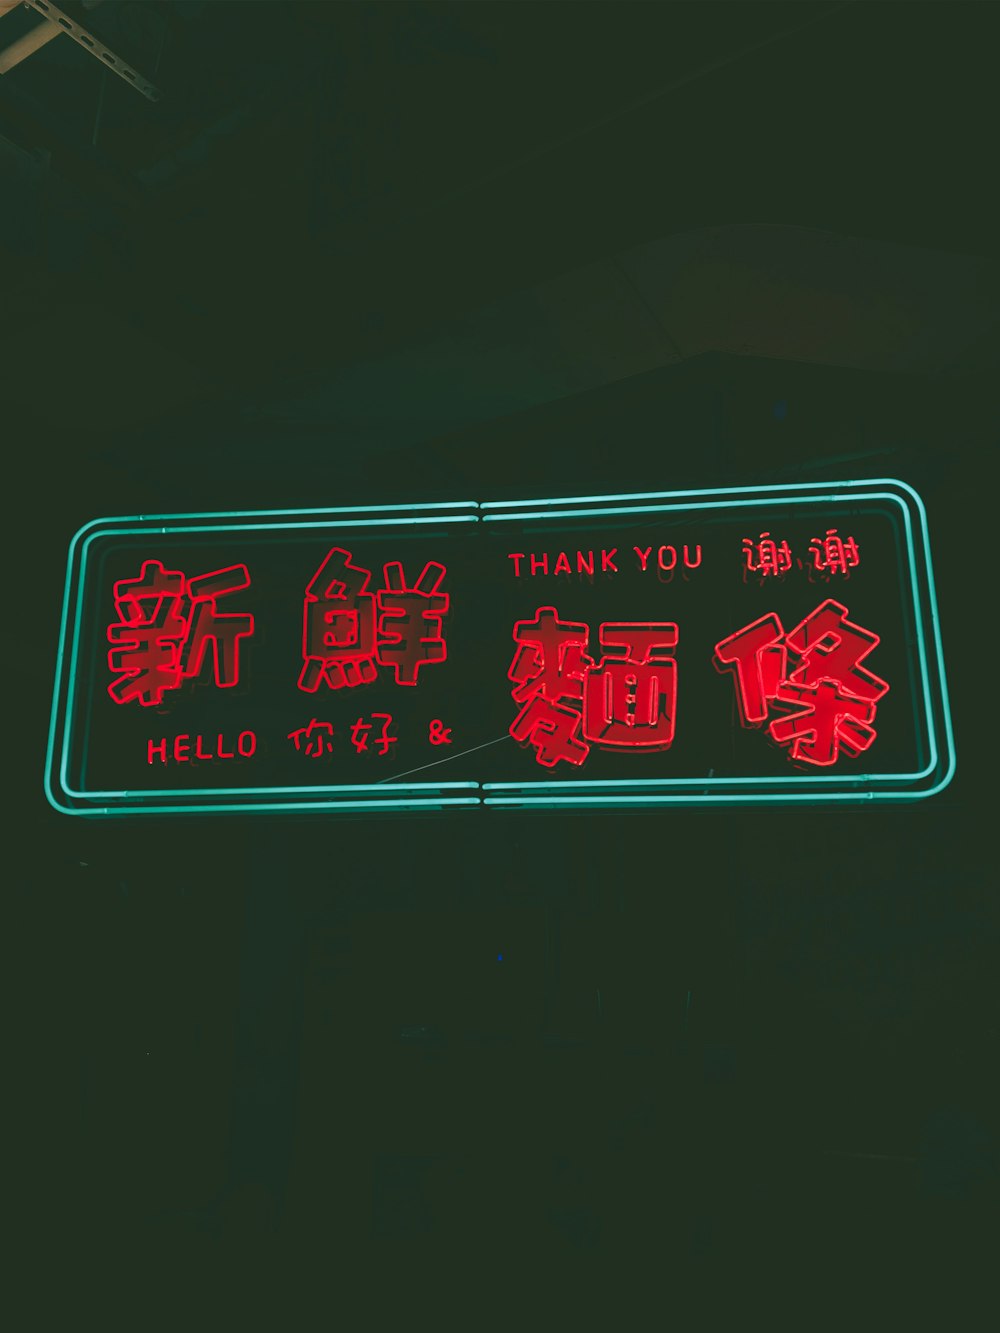 testo Kanji rosso con segno al neon di ringraziamento e ciao